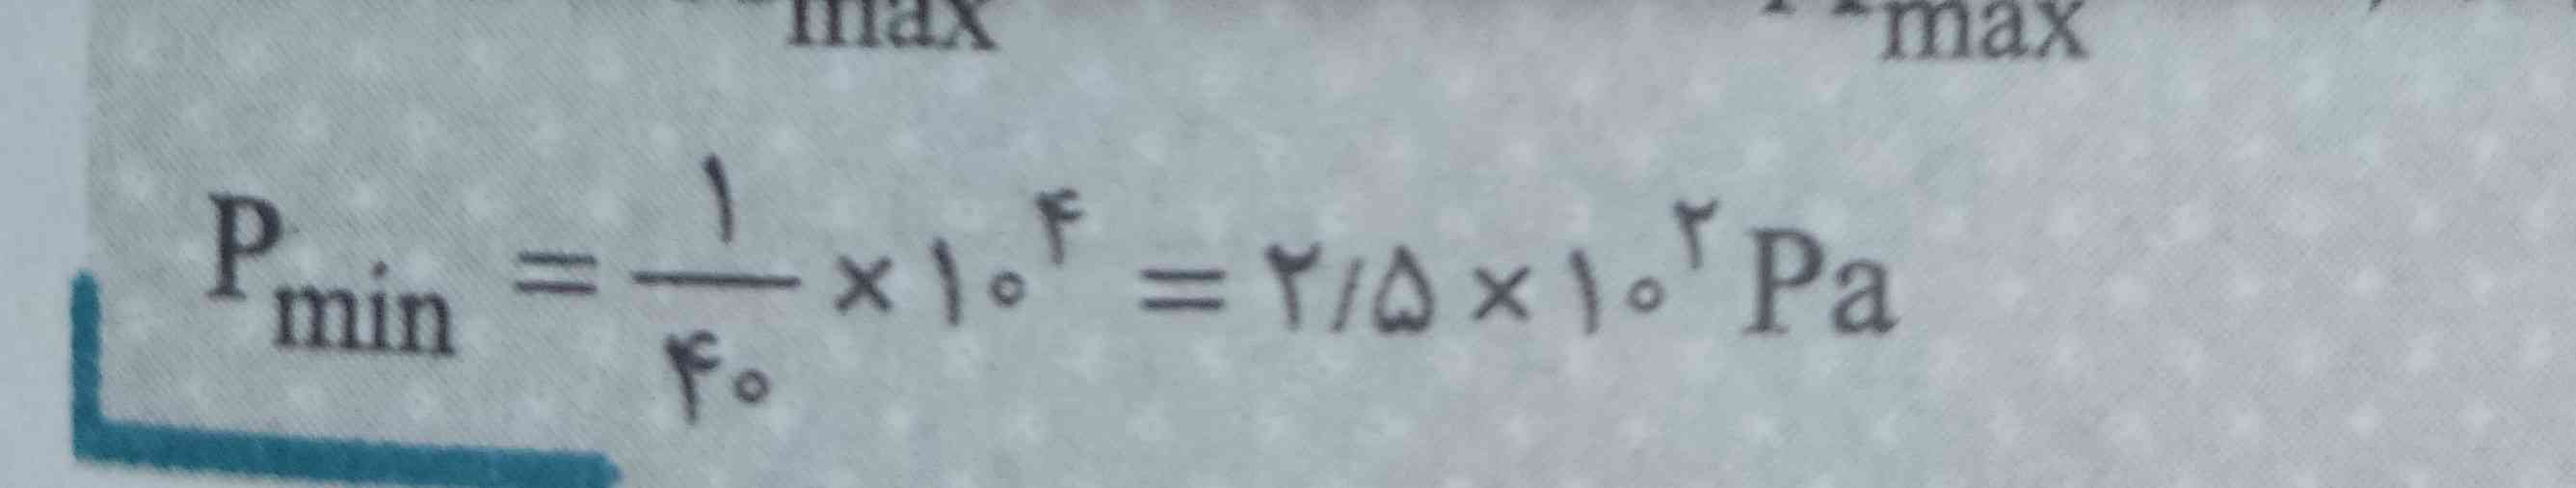 لطفا توضیح بدید ریاضیشو نفهمیدم چطوری شد 2/5  * 10²